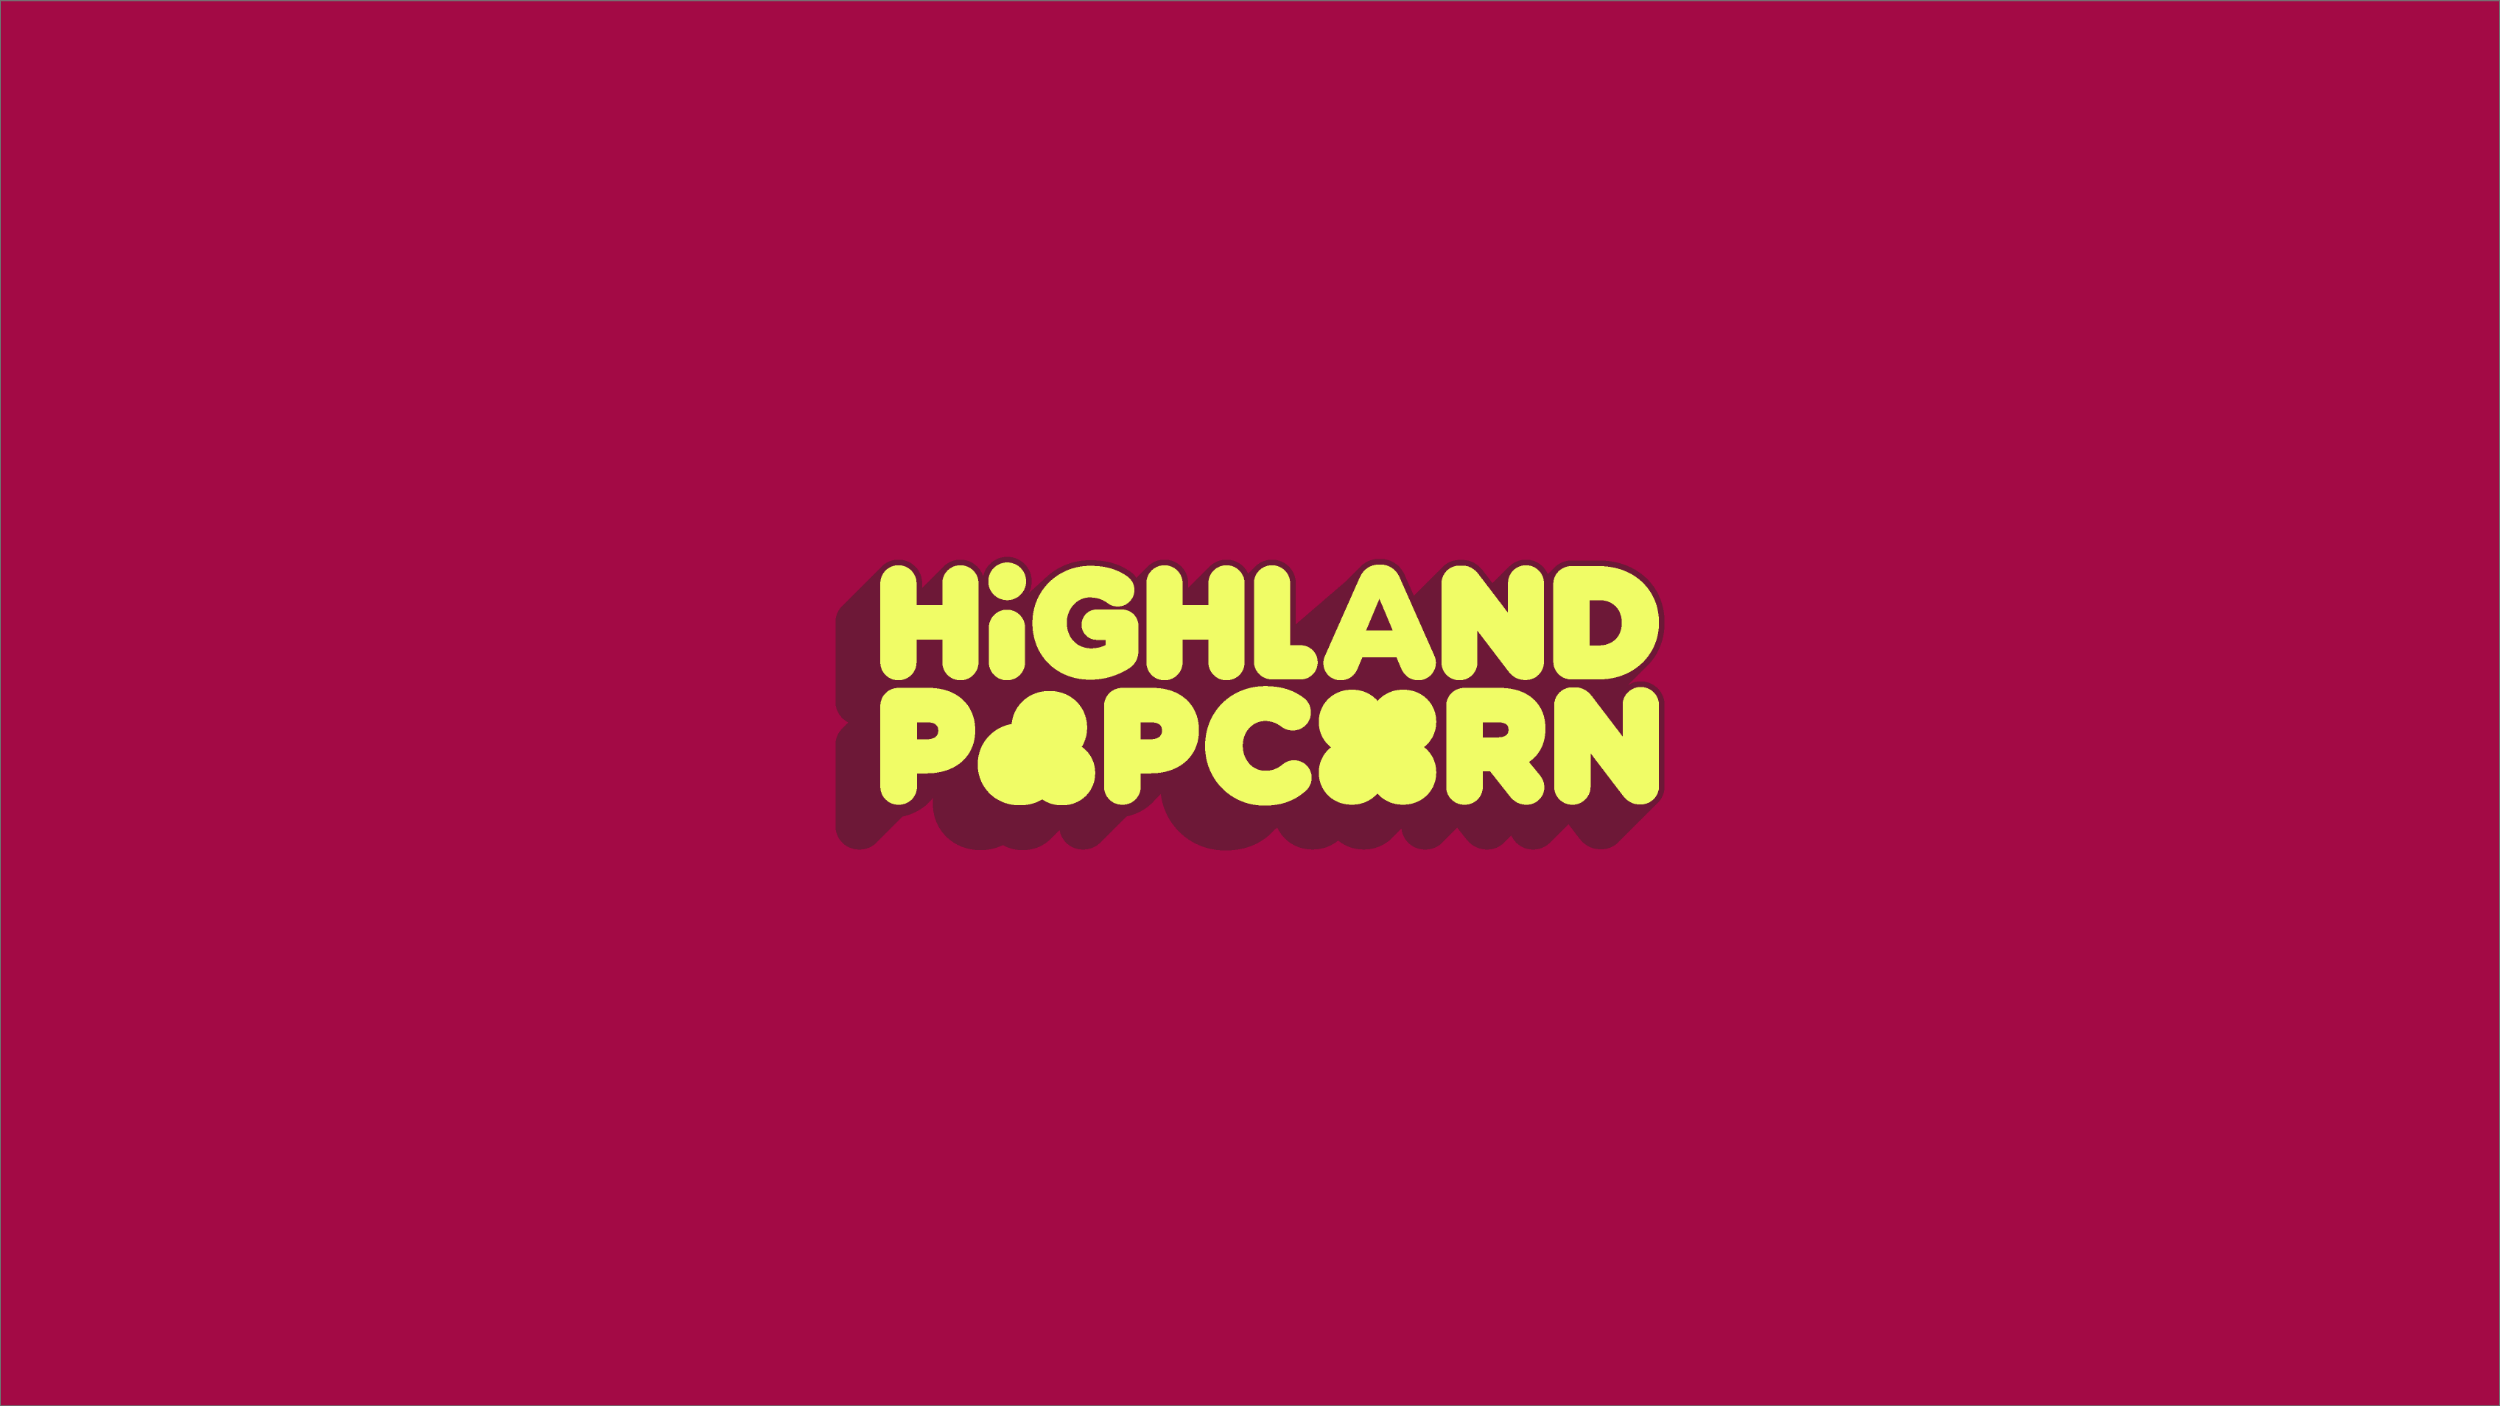 Highland Popcorn typography logo